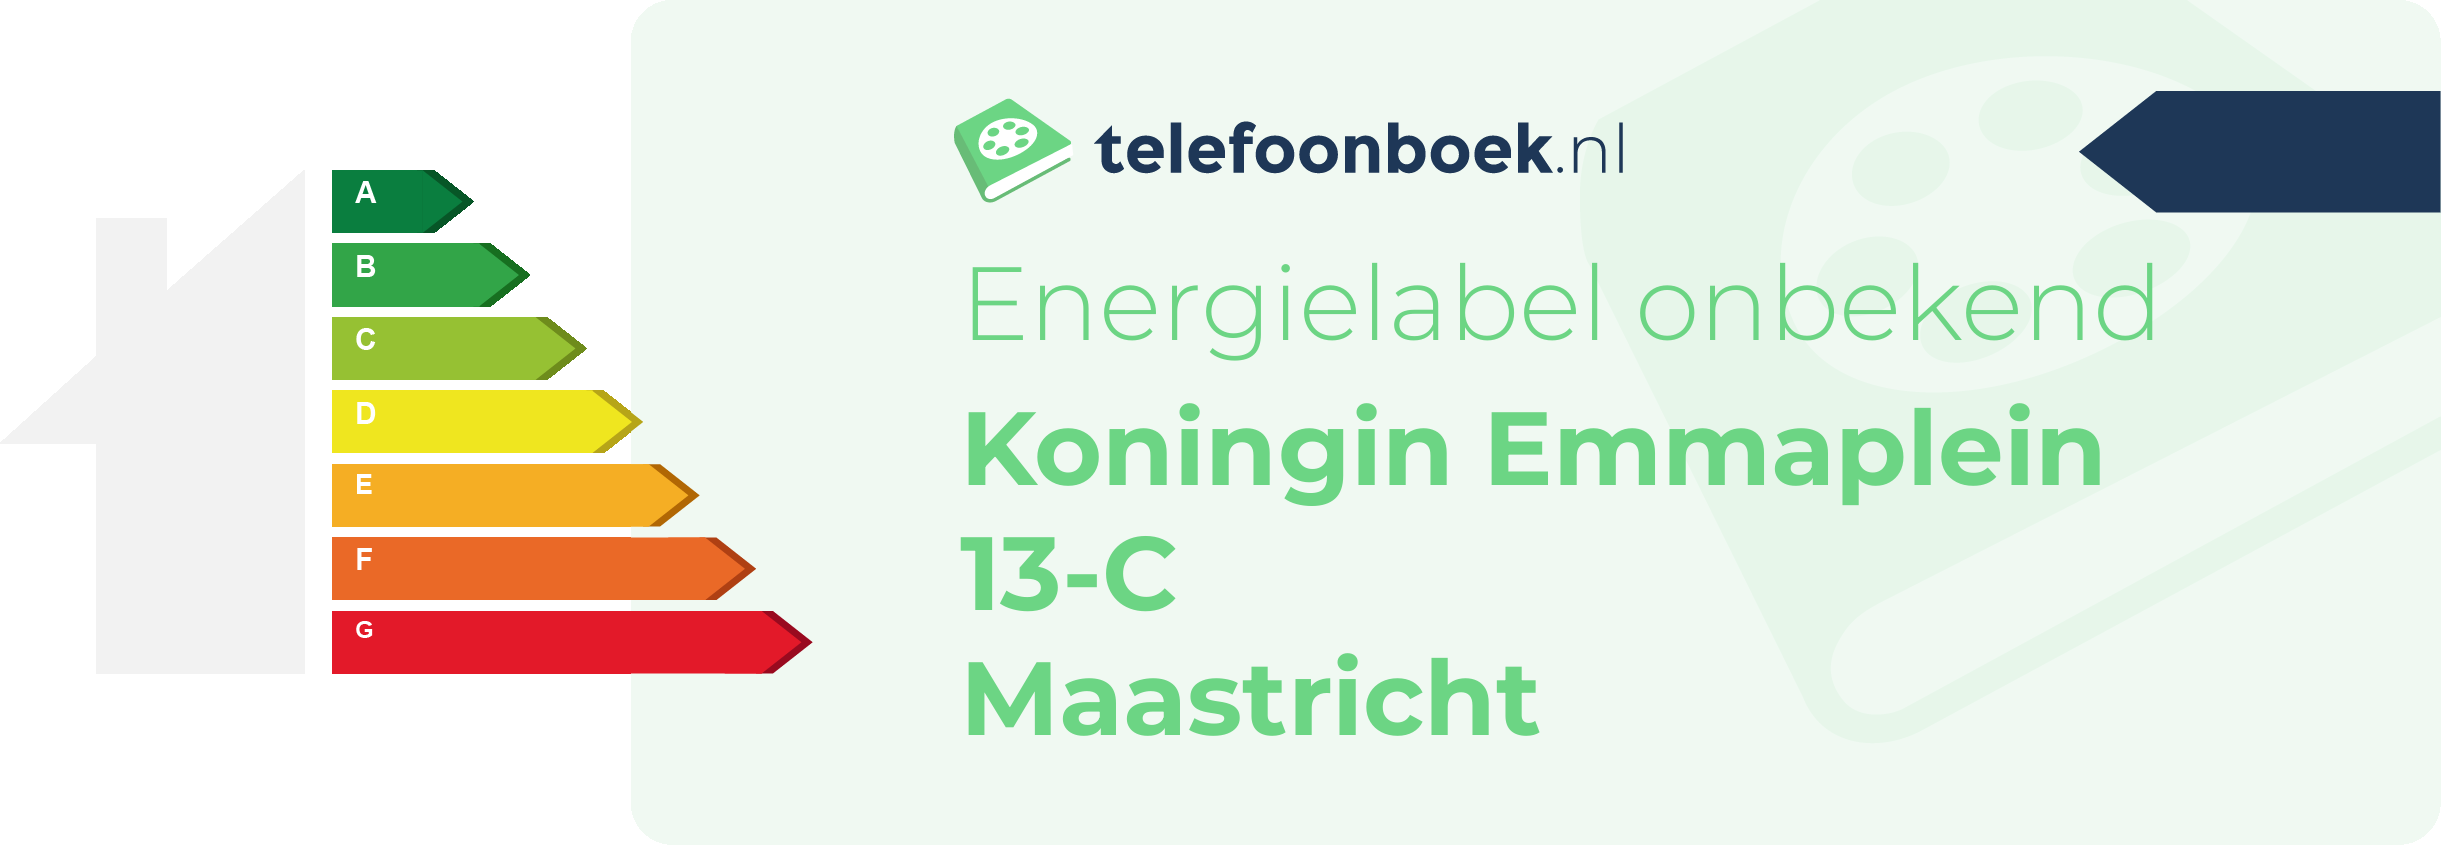 Energielabel Koningin Emmaplein 13-C Maastricht